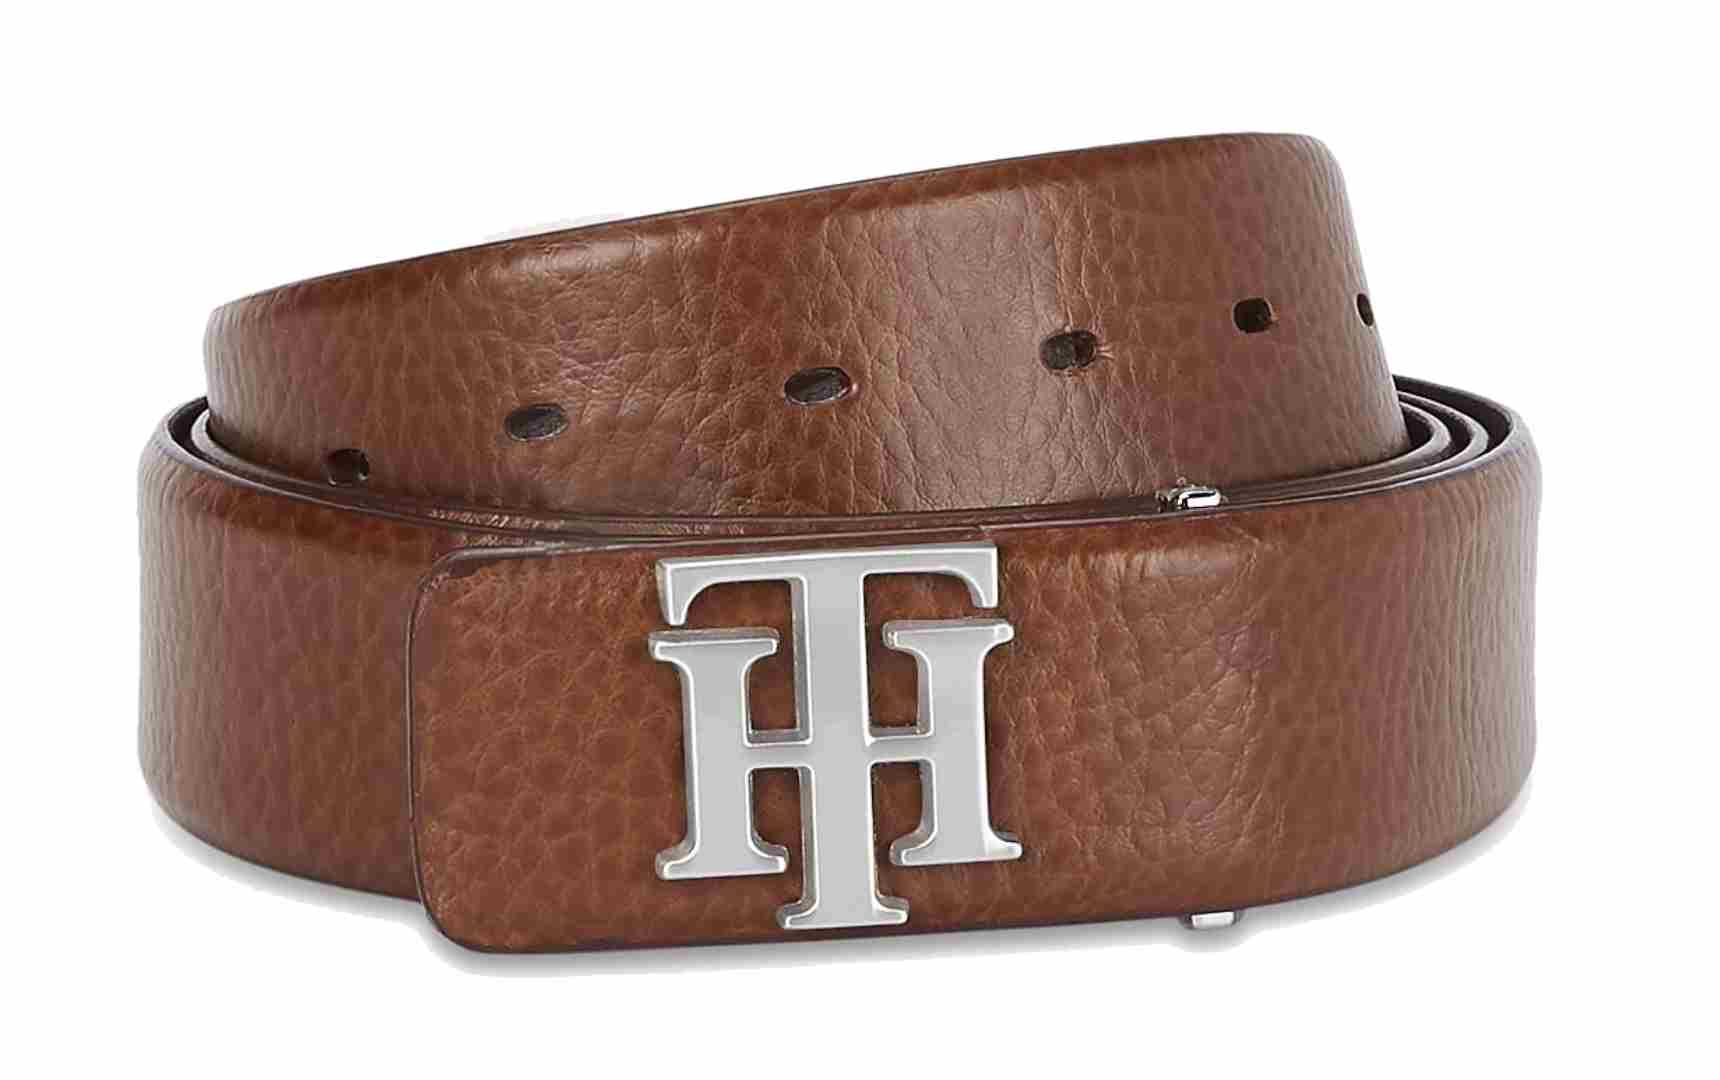 tommy hilfiger leather belt